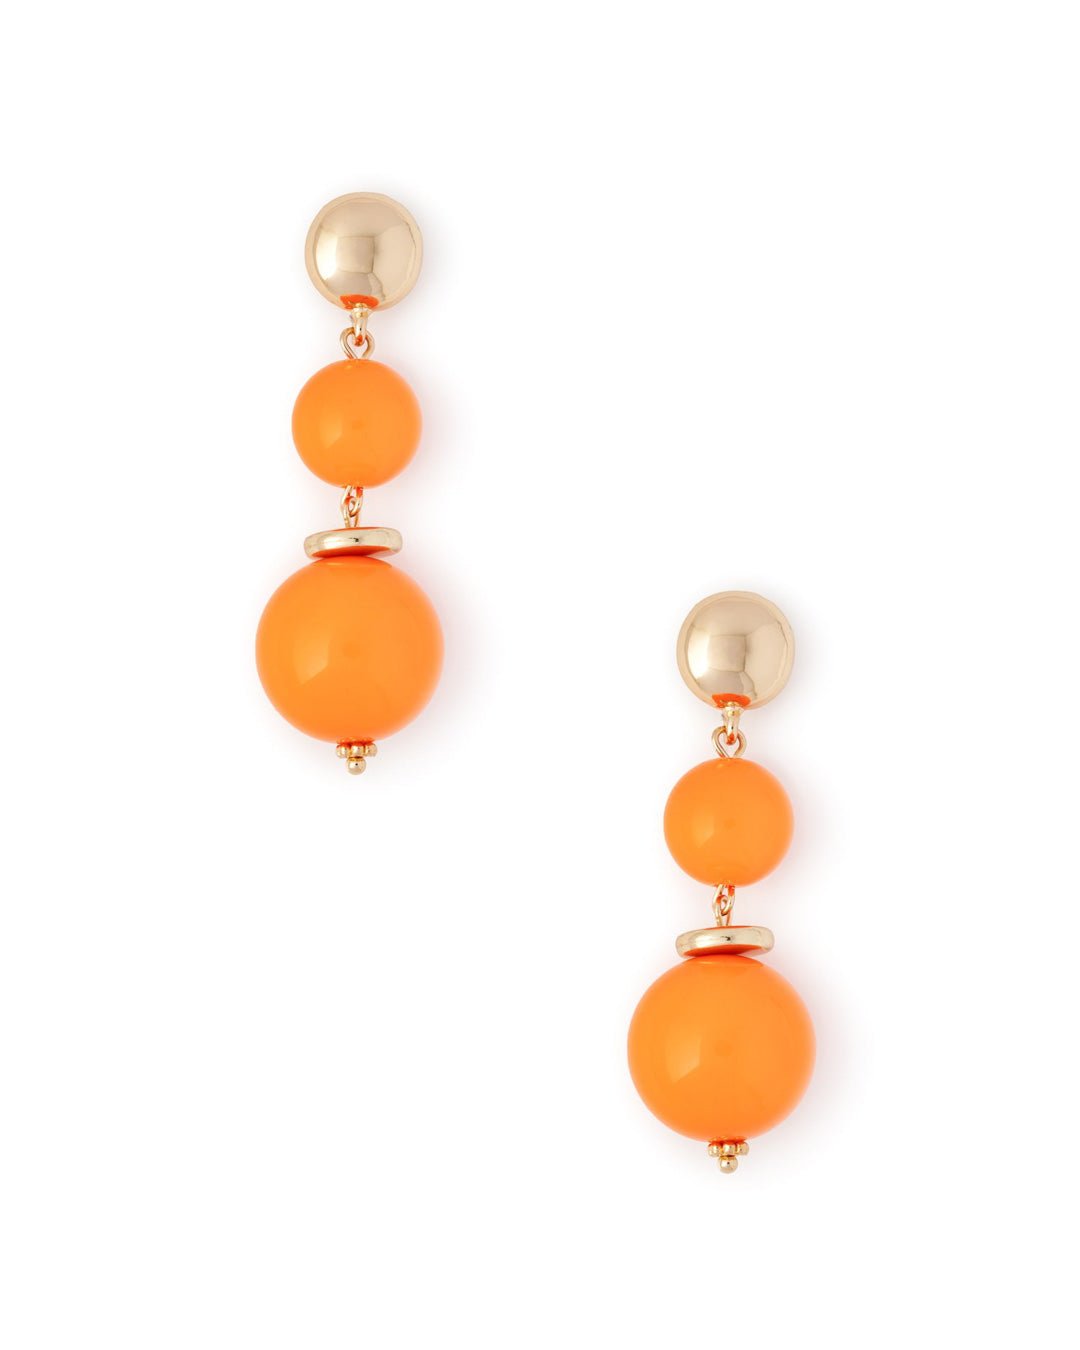 Orecchini con rondelle in metallo pendente con due sfere in acrilico arancio - Mya Accessories